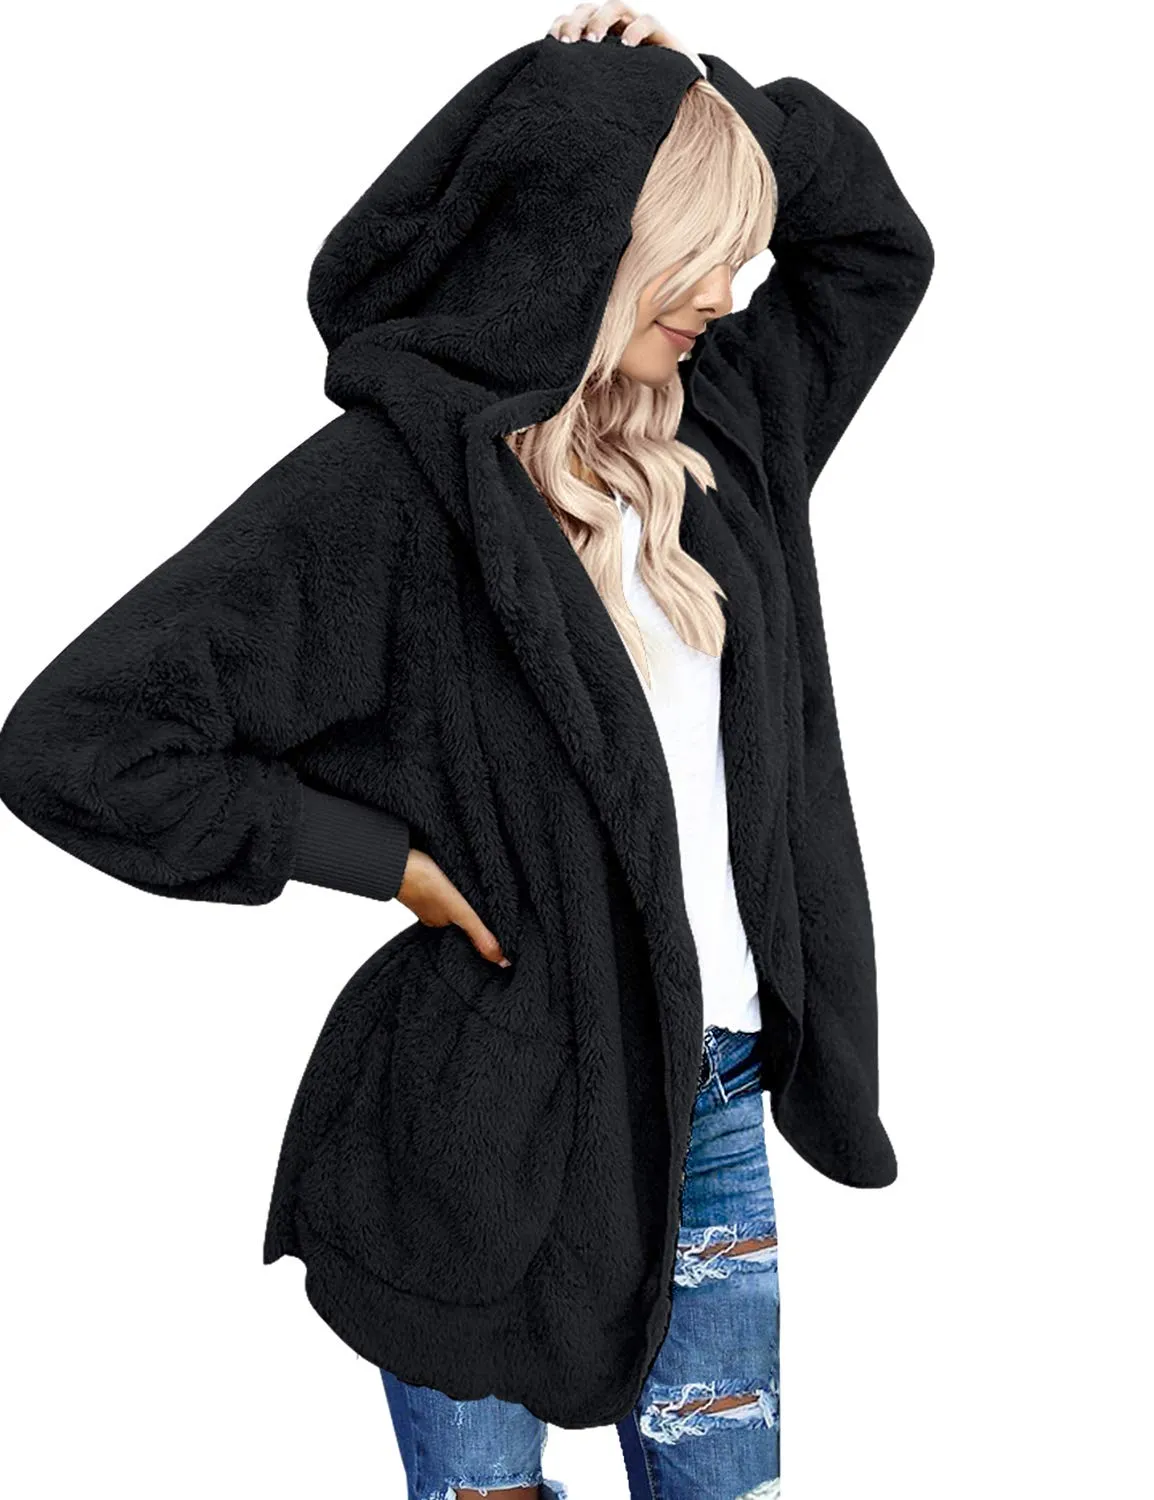 ￜbergro￟e Jacken f￼r Frauen offen vorne mit Kapuze mit drapierten Taschen Strickjacke Mantel